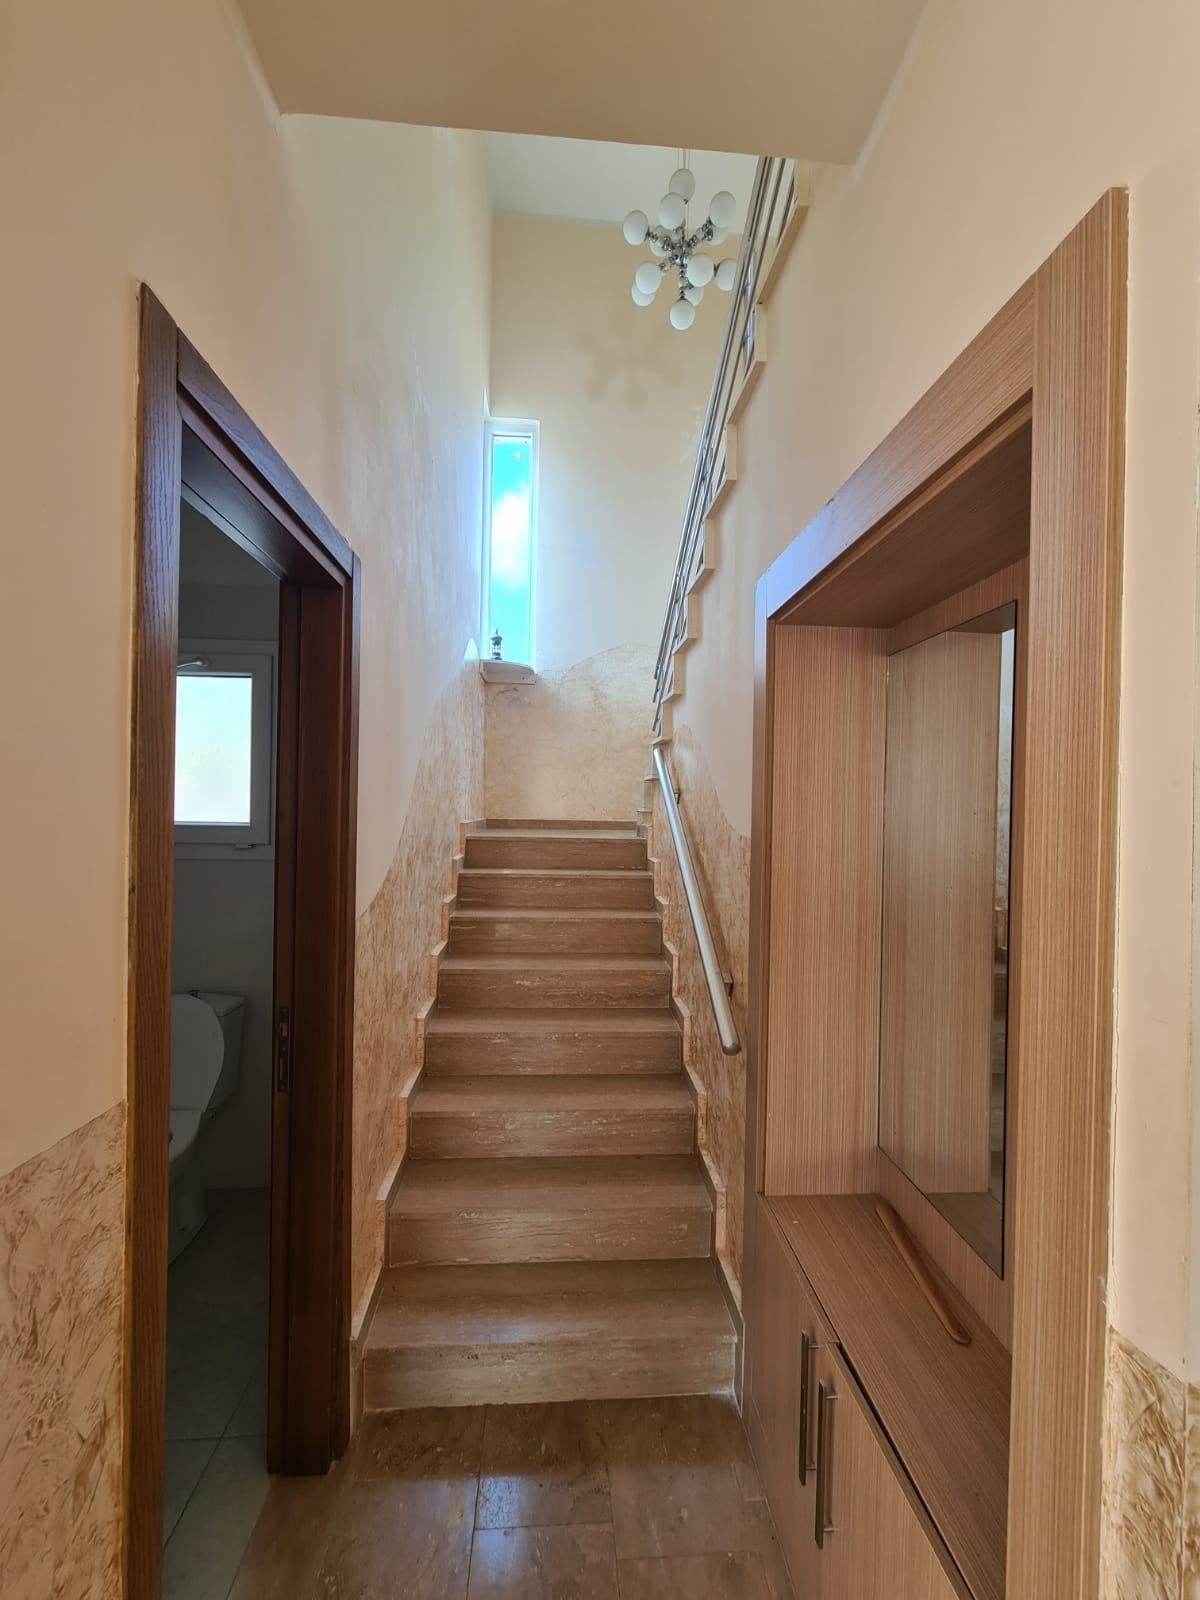 3 bedroom villa for sale in Kyrenia, Karshiyaka-884a42b9-9402-448a-a382-f5762f0645af